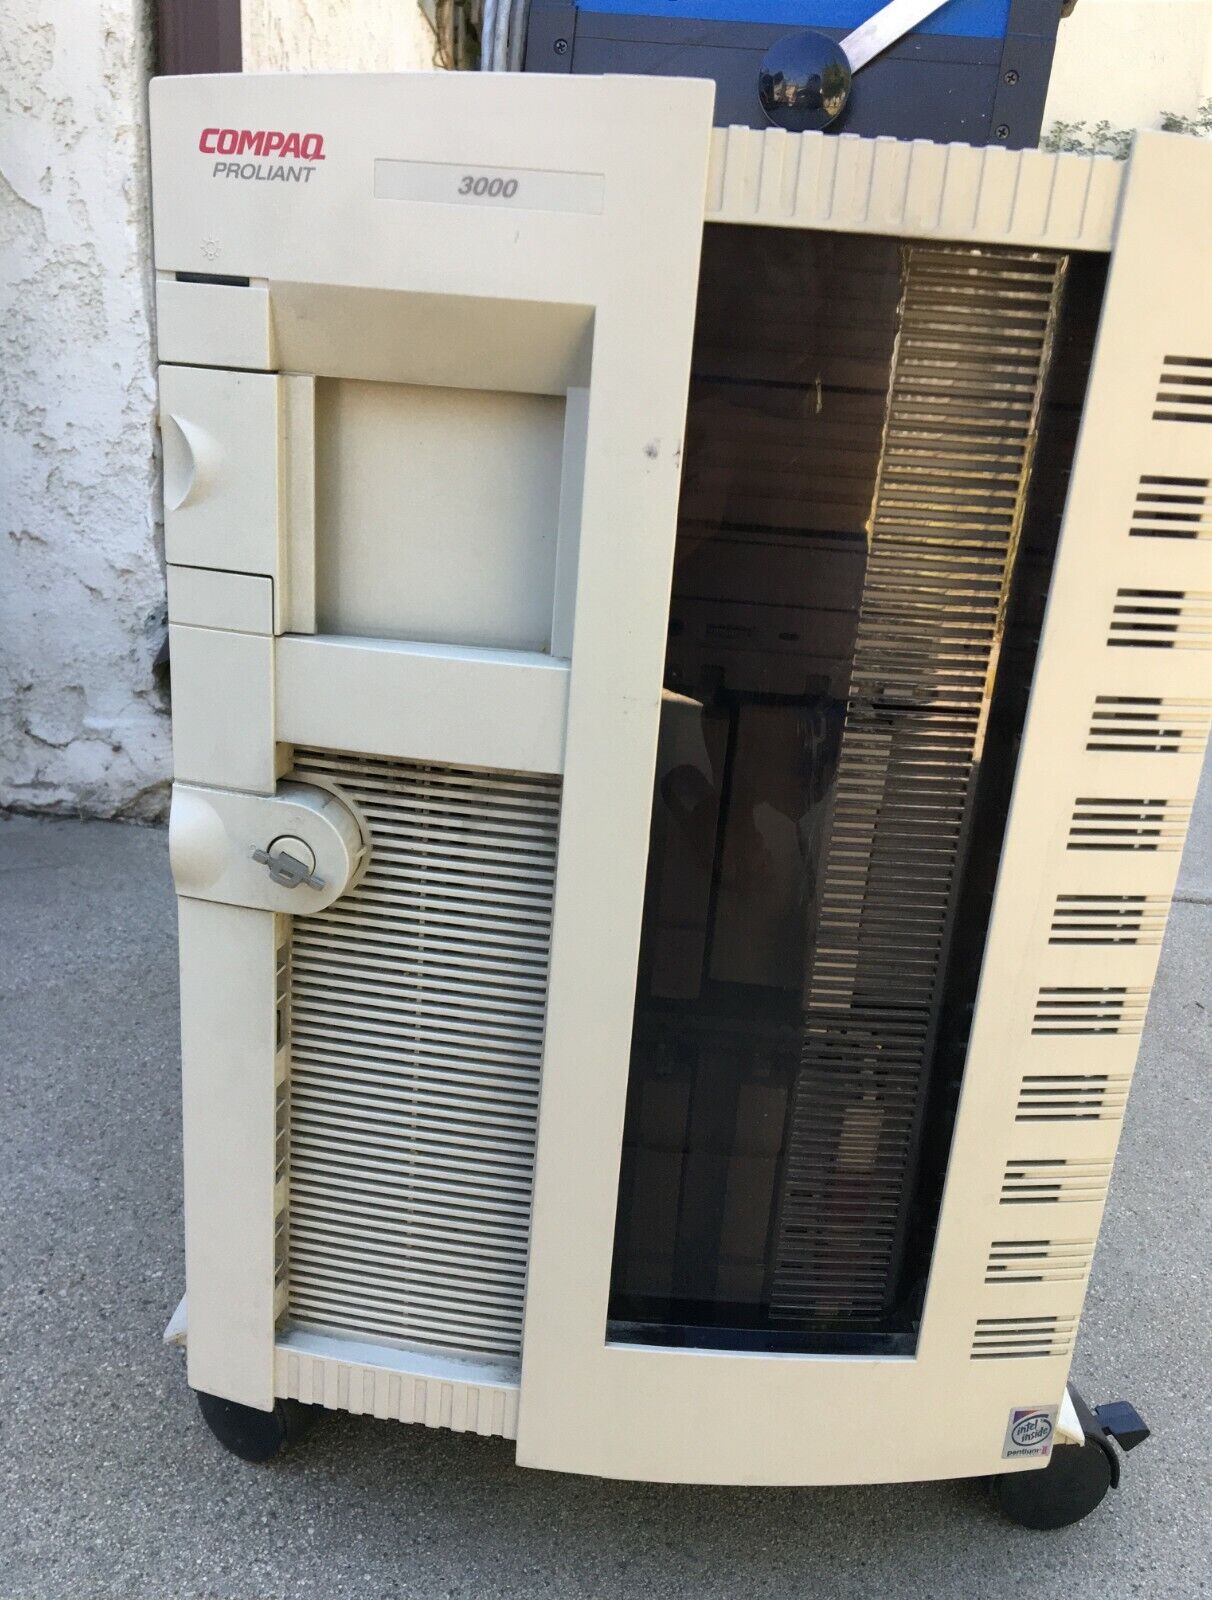 Compaq Proliant 3000 Server Series Pentium II ES1003